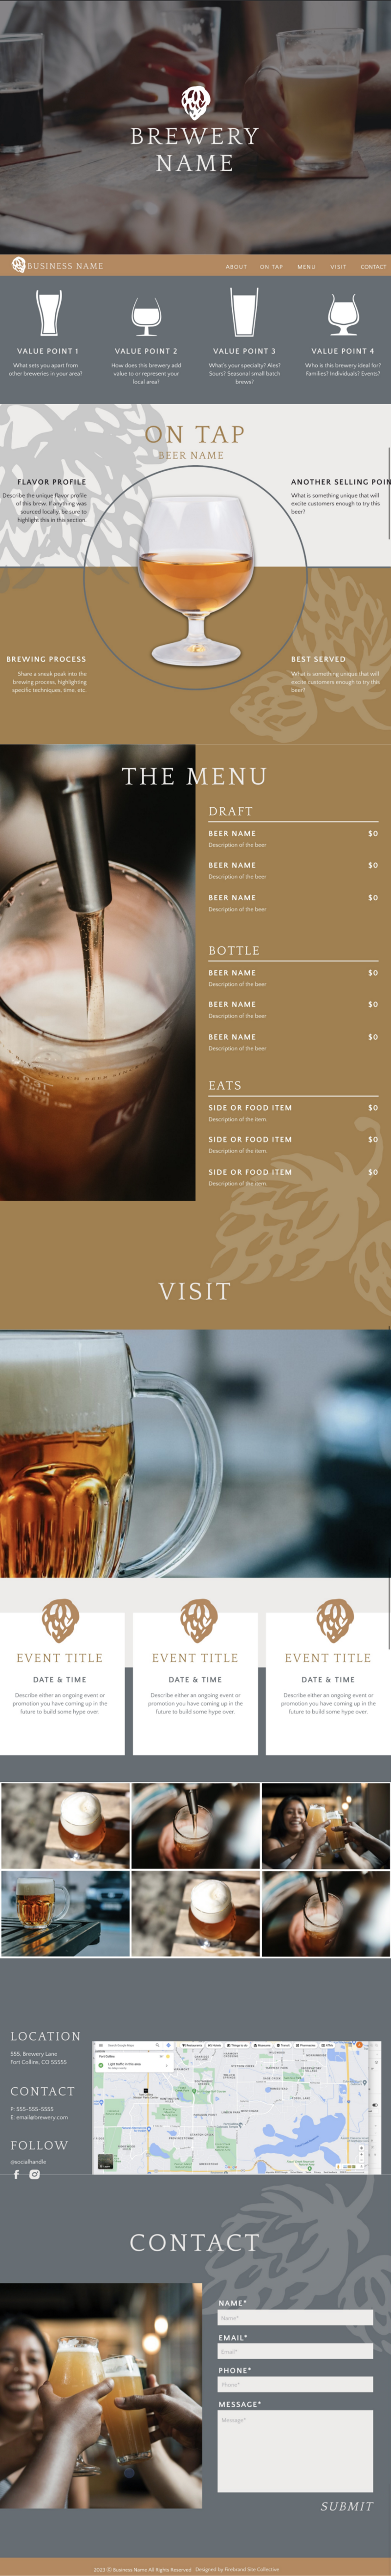 brewery website design